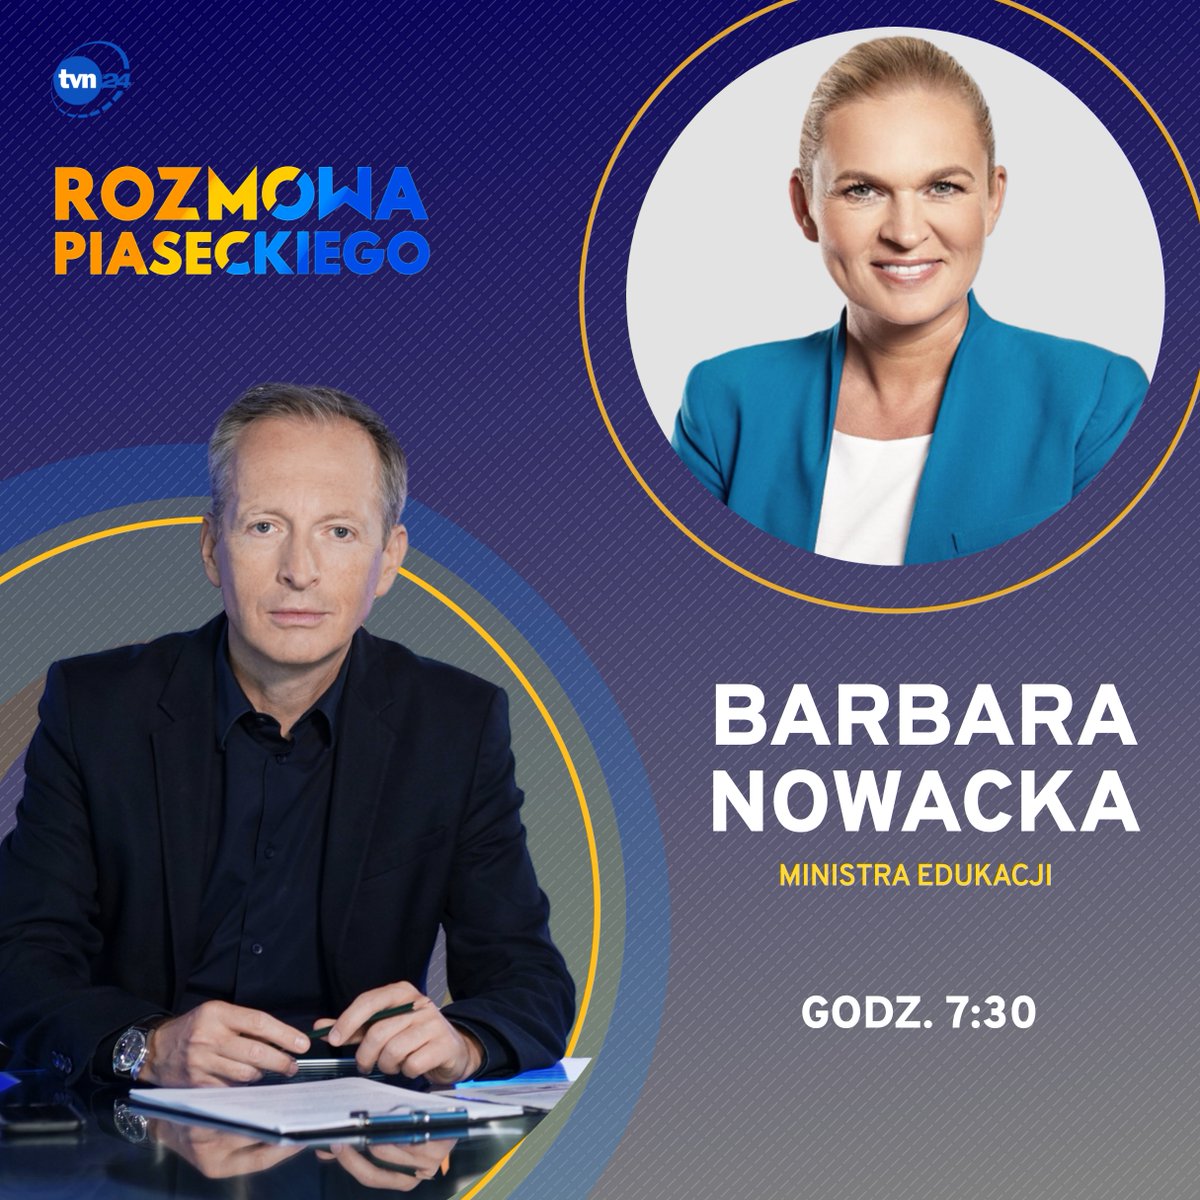 Gościem @KonradPiasecki w #RozmowaPiaseckiego będzie @barbaraanowacka. OGLĄDAJ jutro o 7.30 w @tvn24 i TVN24 GO: tvn24.pl/go/live,1/tvn2…